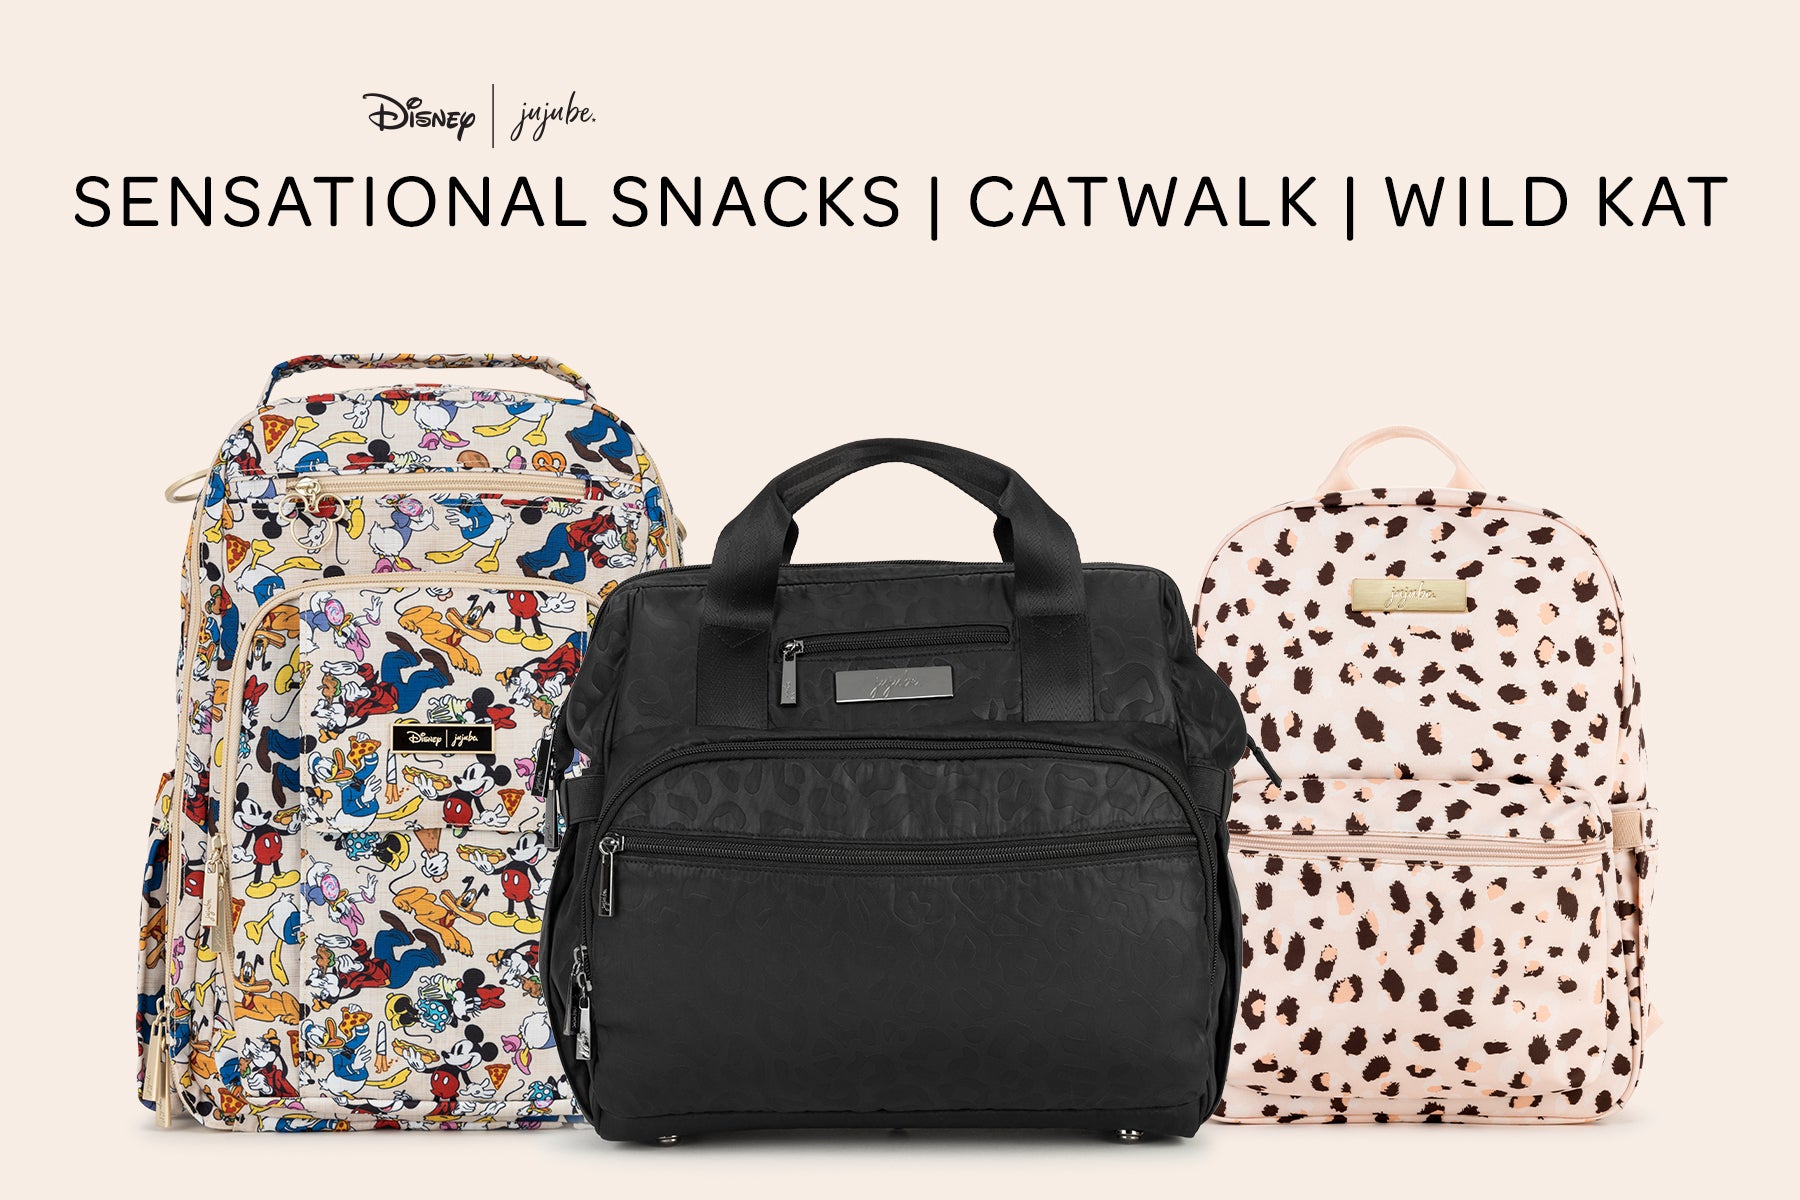 Wild Kat, Catwalk, Sensational Snacks Retailers!!